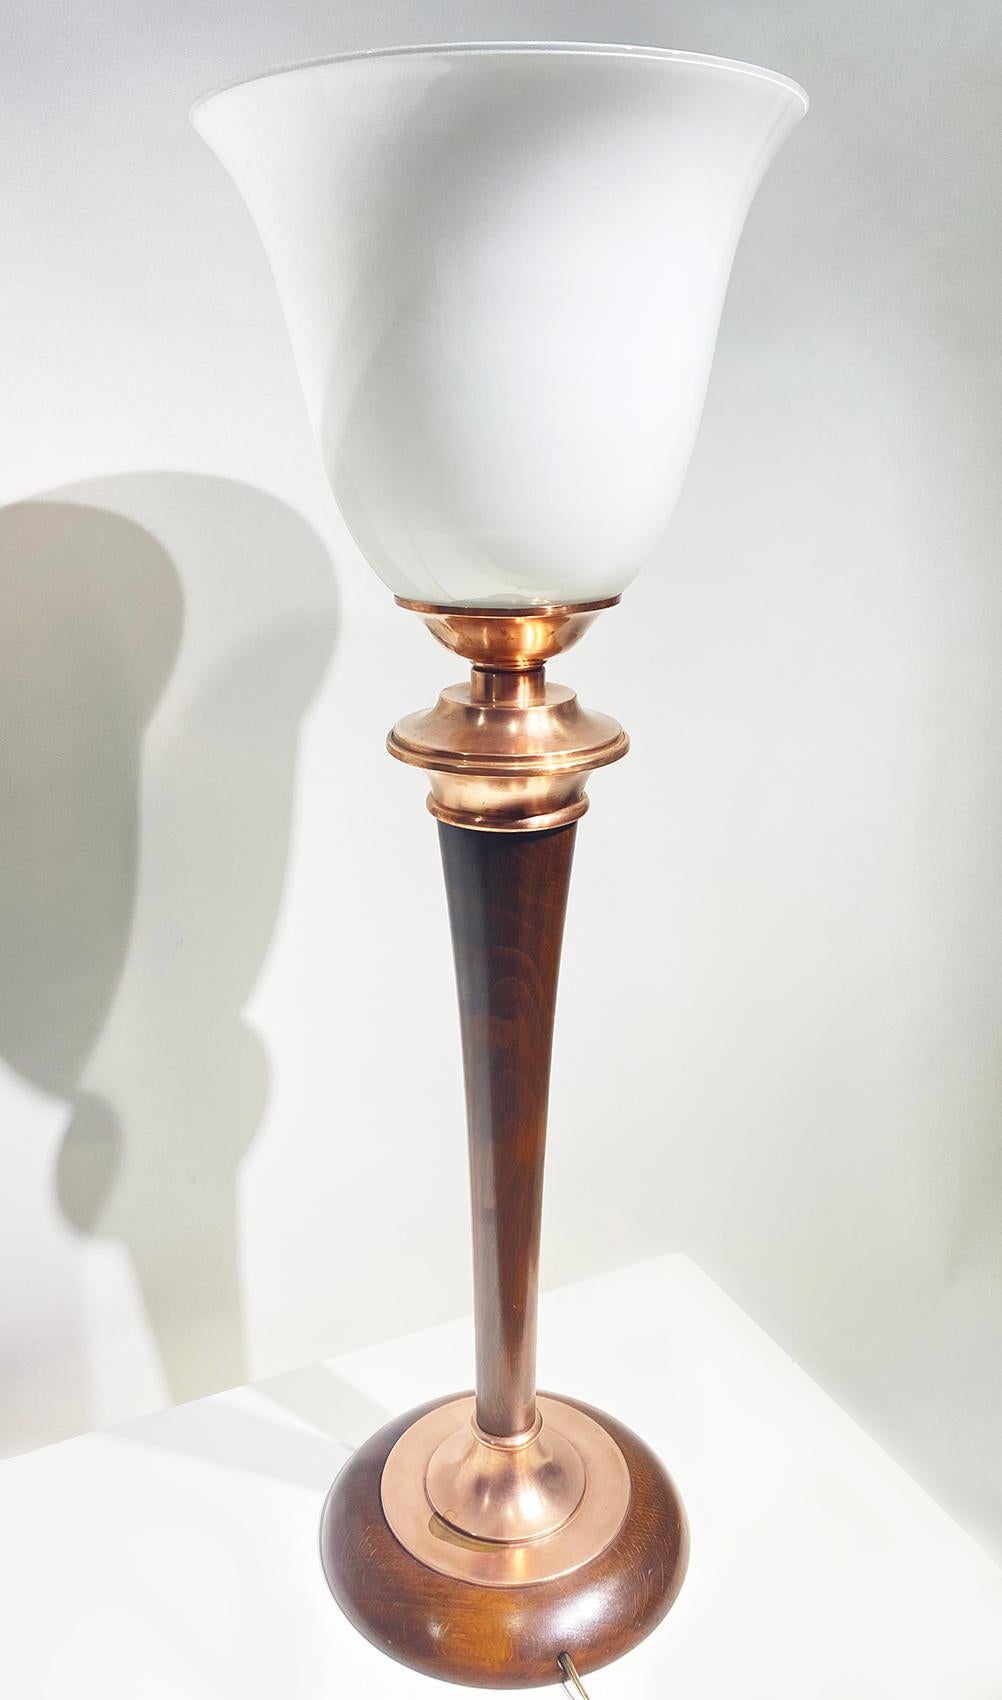 Magnifique lampe torche de table, fabriquée par Mazda, vers les années 1930, France. 
Il est doté d'un abat-jour en verre opalin blanc, d'un sommet ouvert et d'une base en bois et cuivre.
Peut être livré et câblé pour une utilisation américaine ou